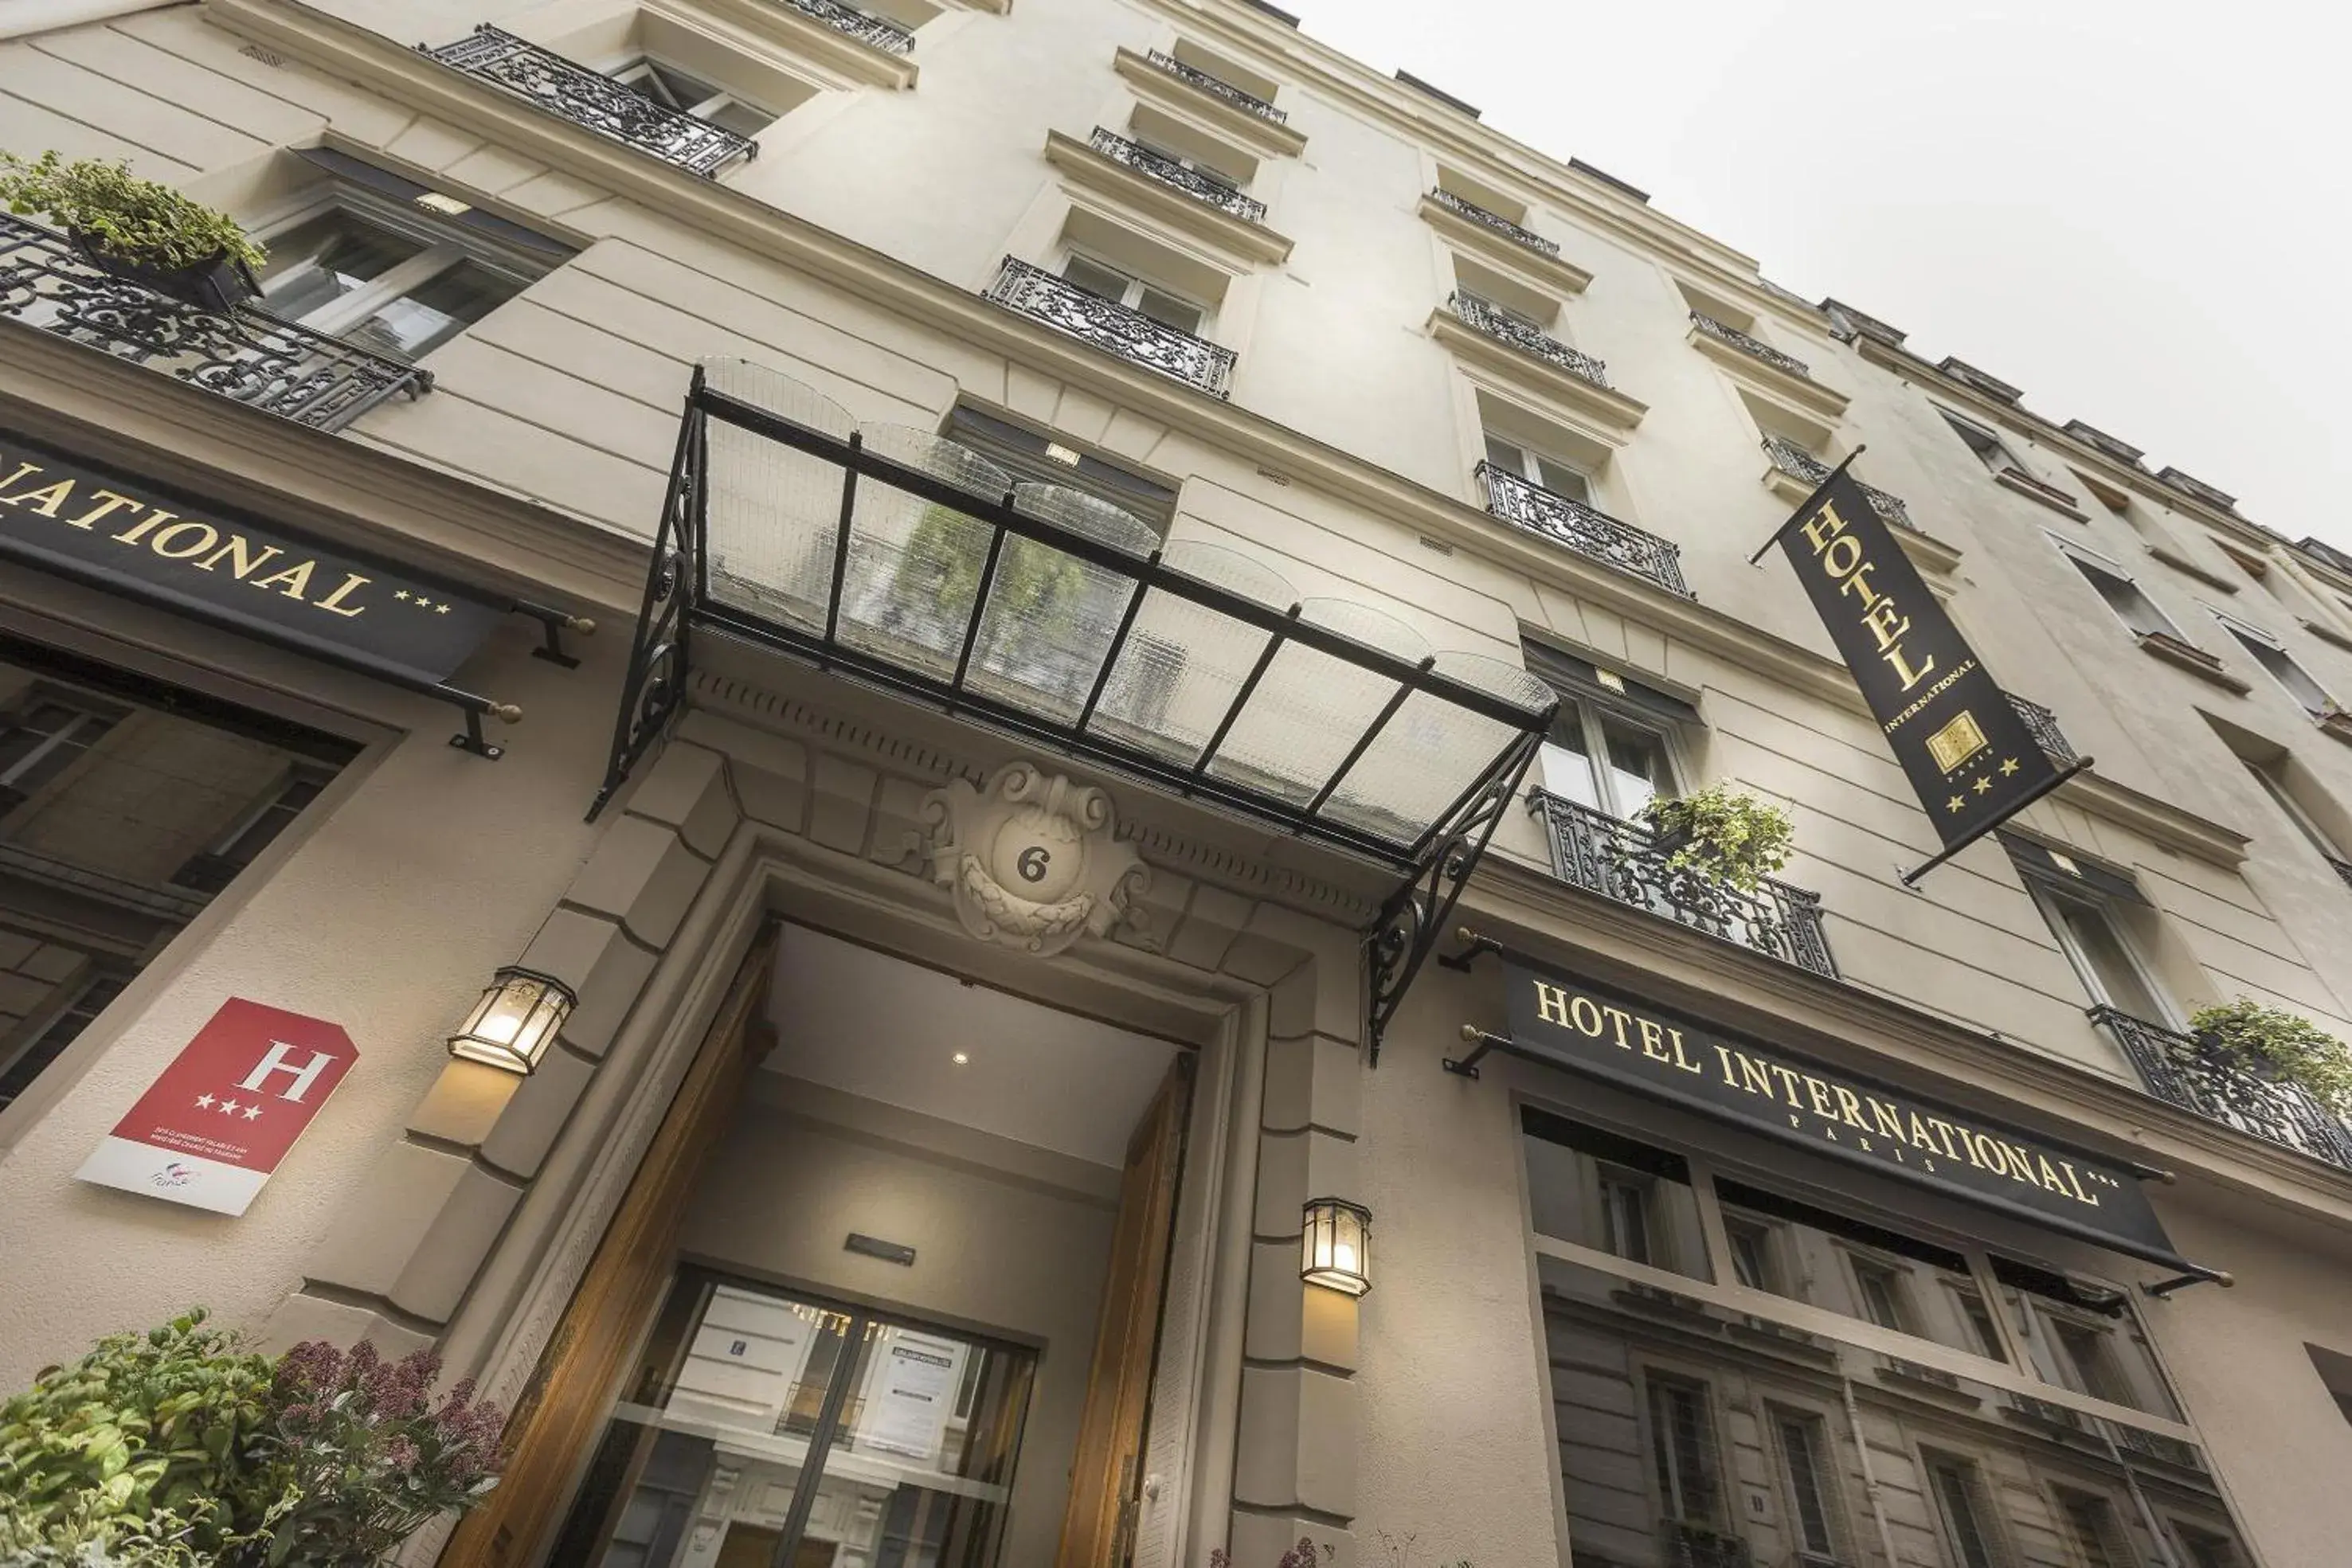 Facade/entrance, Property Building in Hotel International Paris